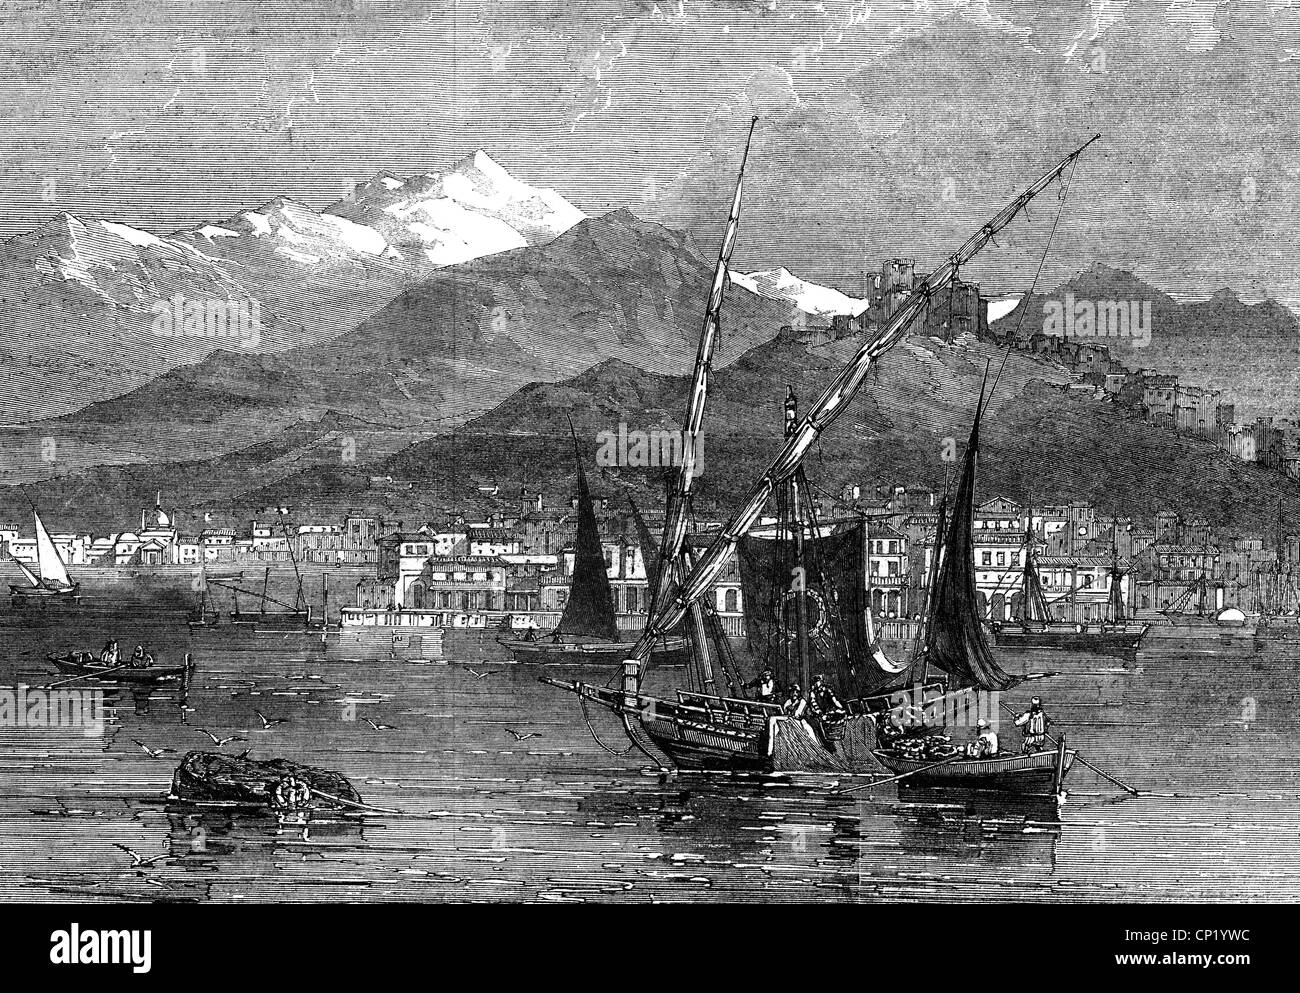 Géographie / Voyage, Grèce, Patras, port, vue avec bateau de pêche, gravure en bois, 1862, droits additionnels-Clearences-non disponible Banque D'Images